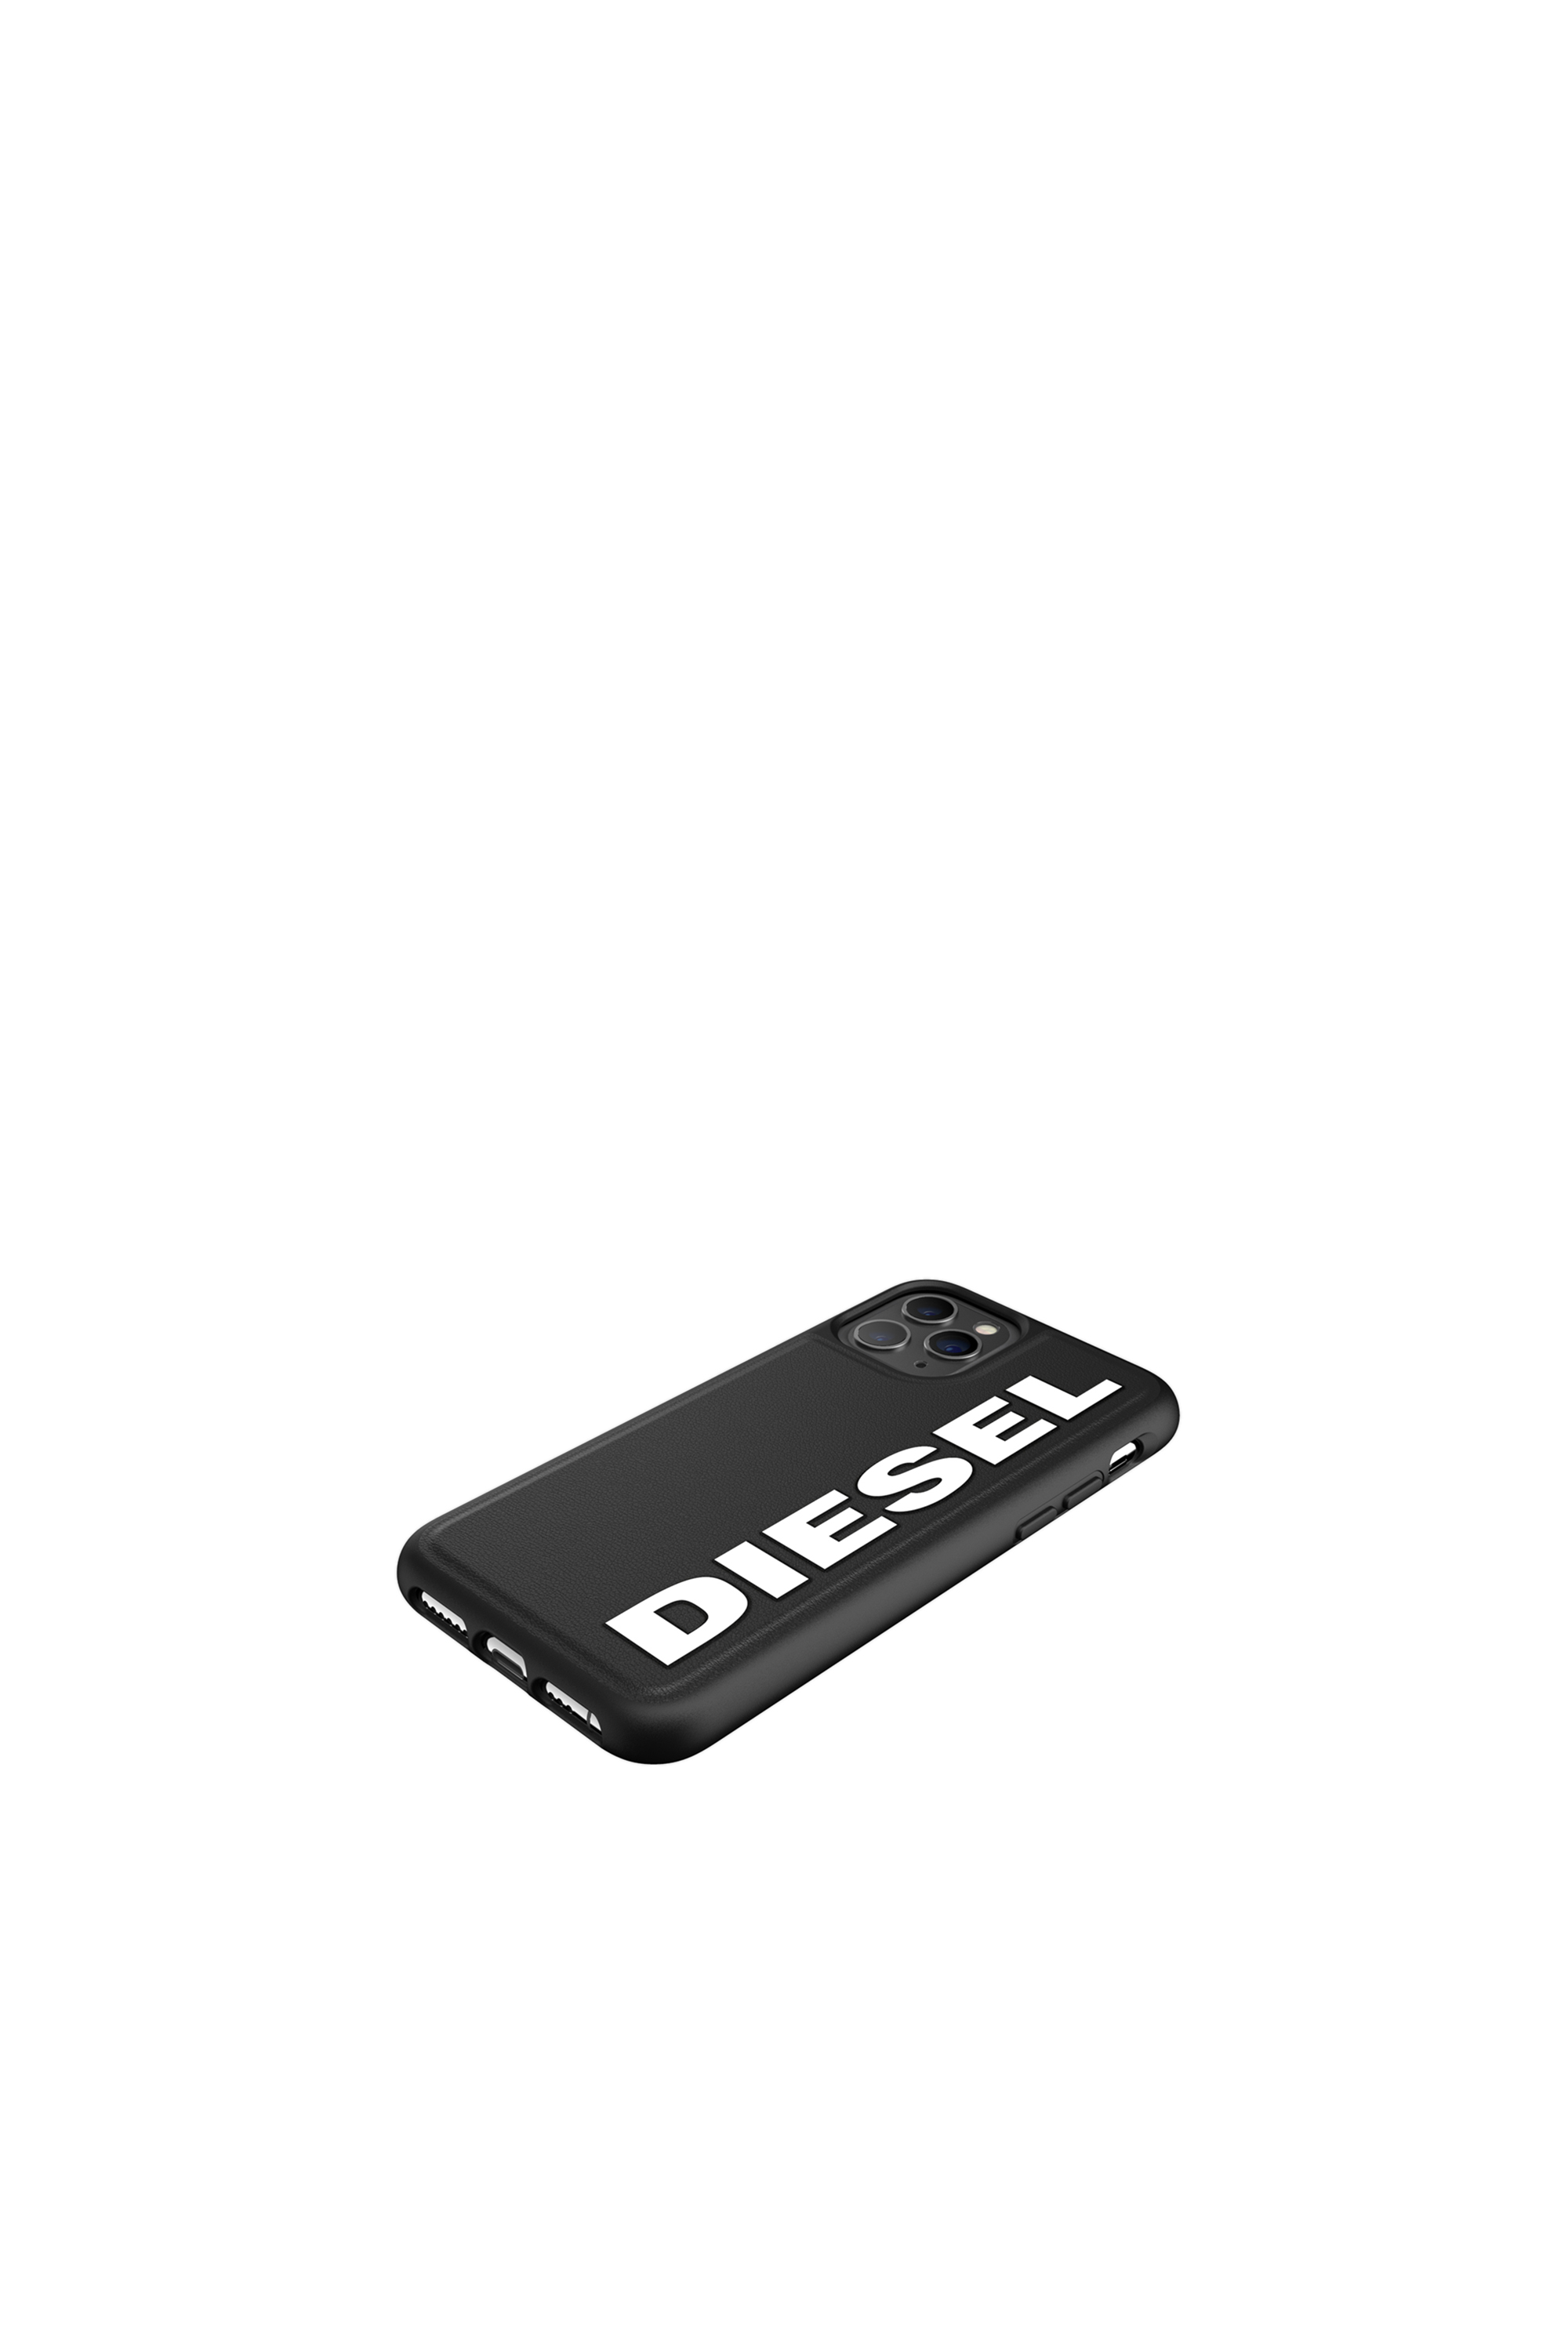 Diesel - 41982, Black - Image 4